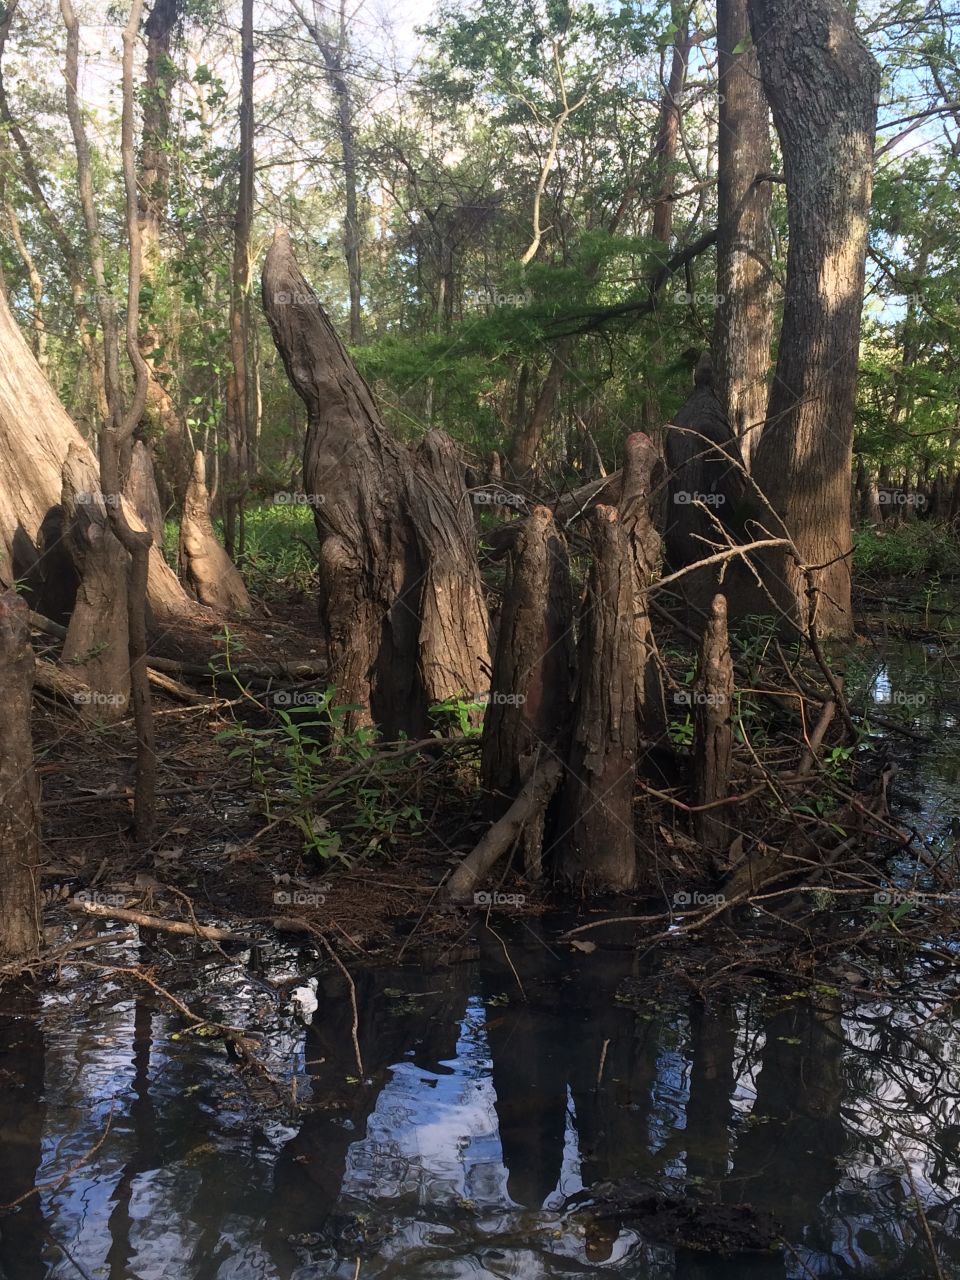 Cypress knees in swamp